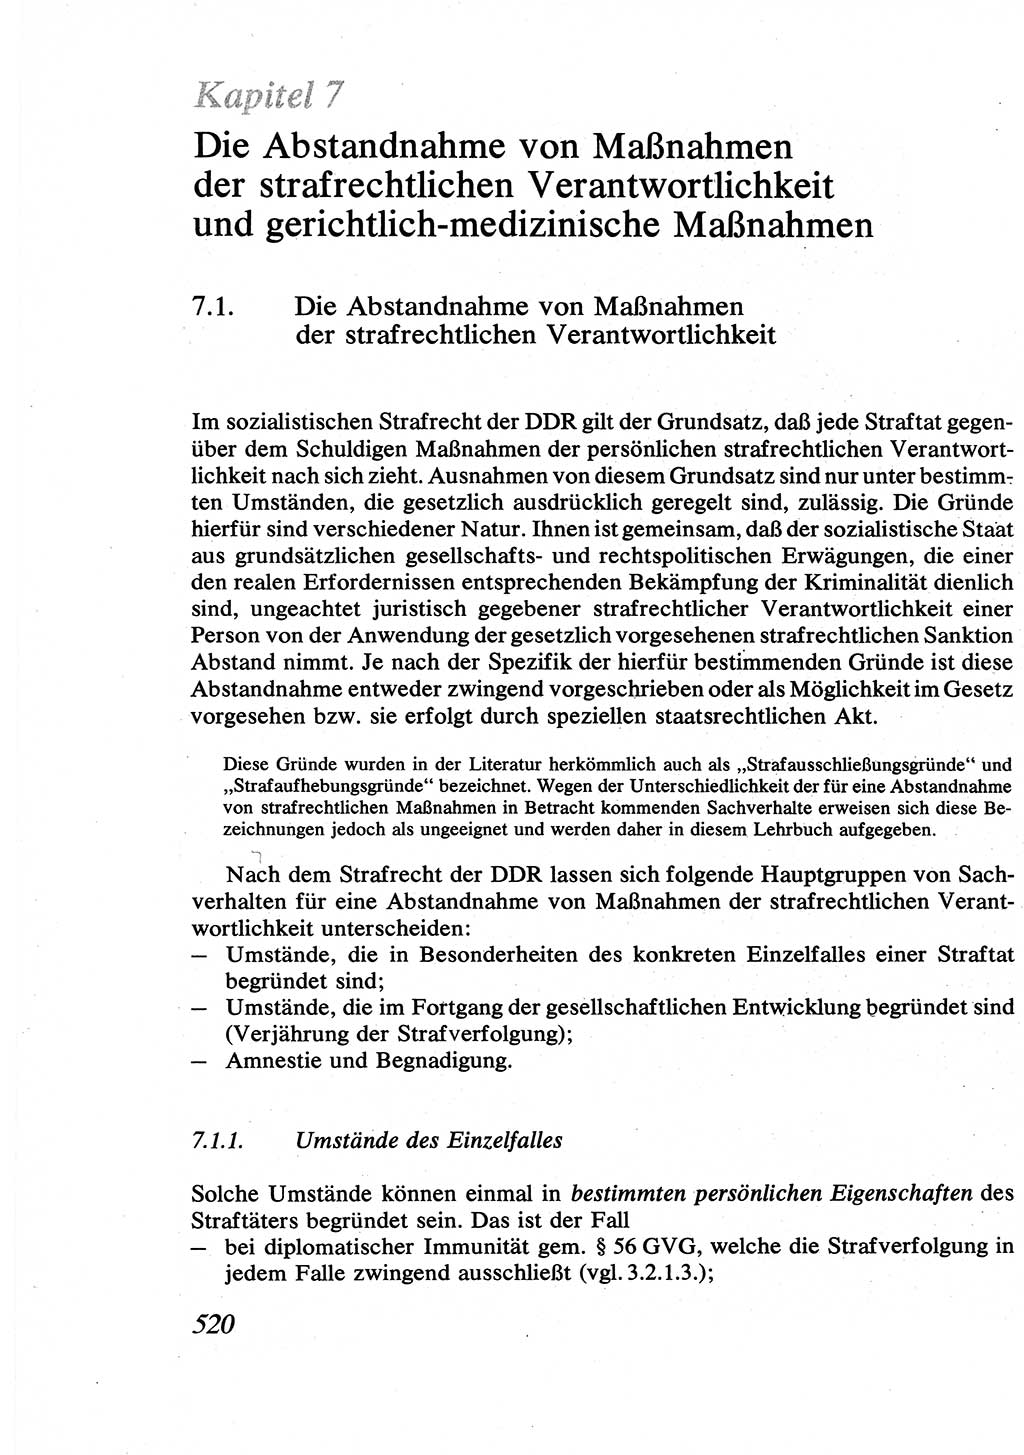 Strafrecht [Deutsche Demokratische Republik (DDR)], Allgemeiner Teil, Lehrbuch 1976, Seite 520 (Strafr. DDR AT Lb. 1976, S. 520)